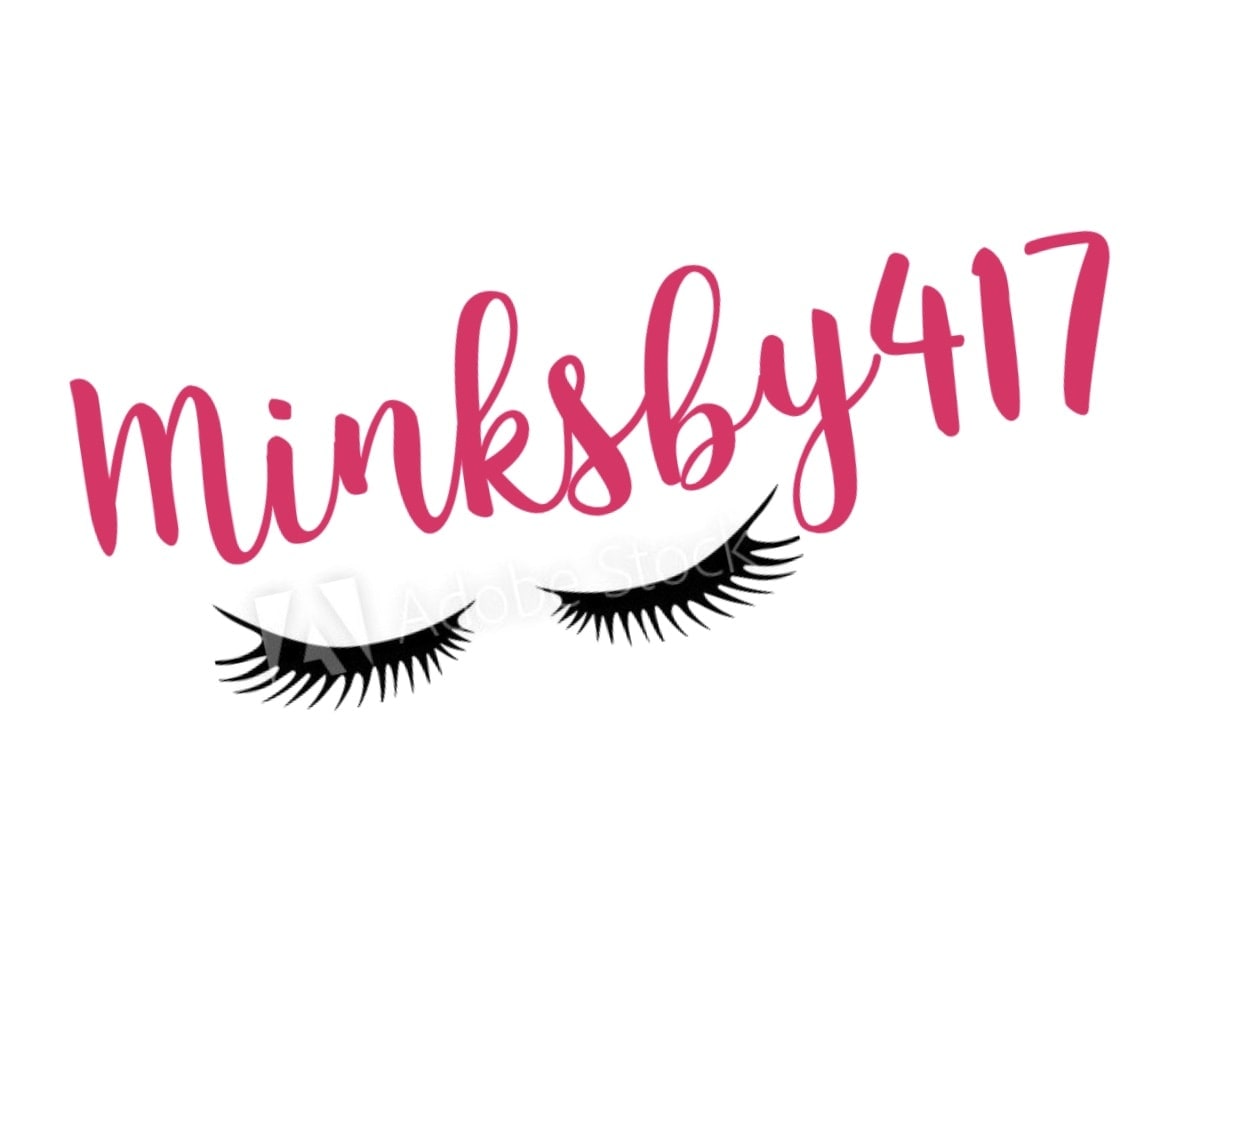 Minksby417